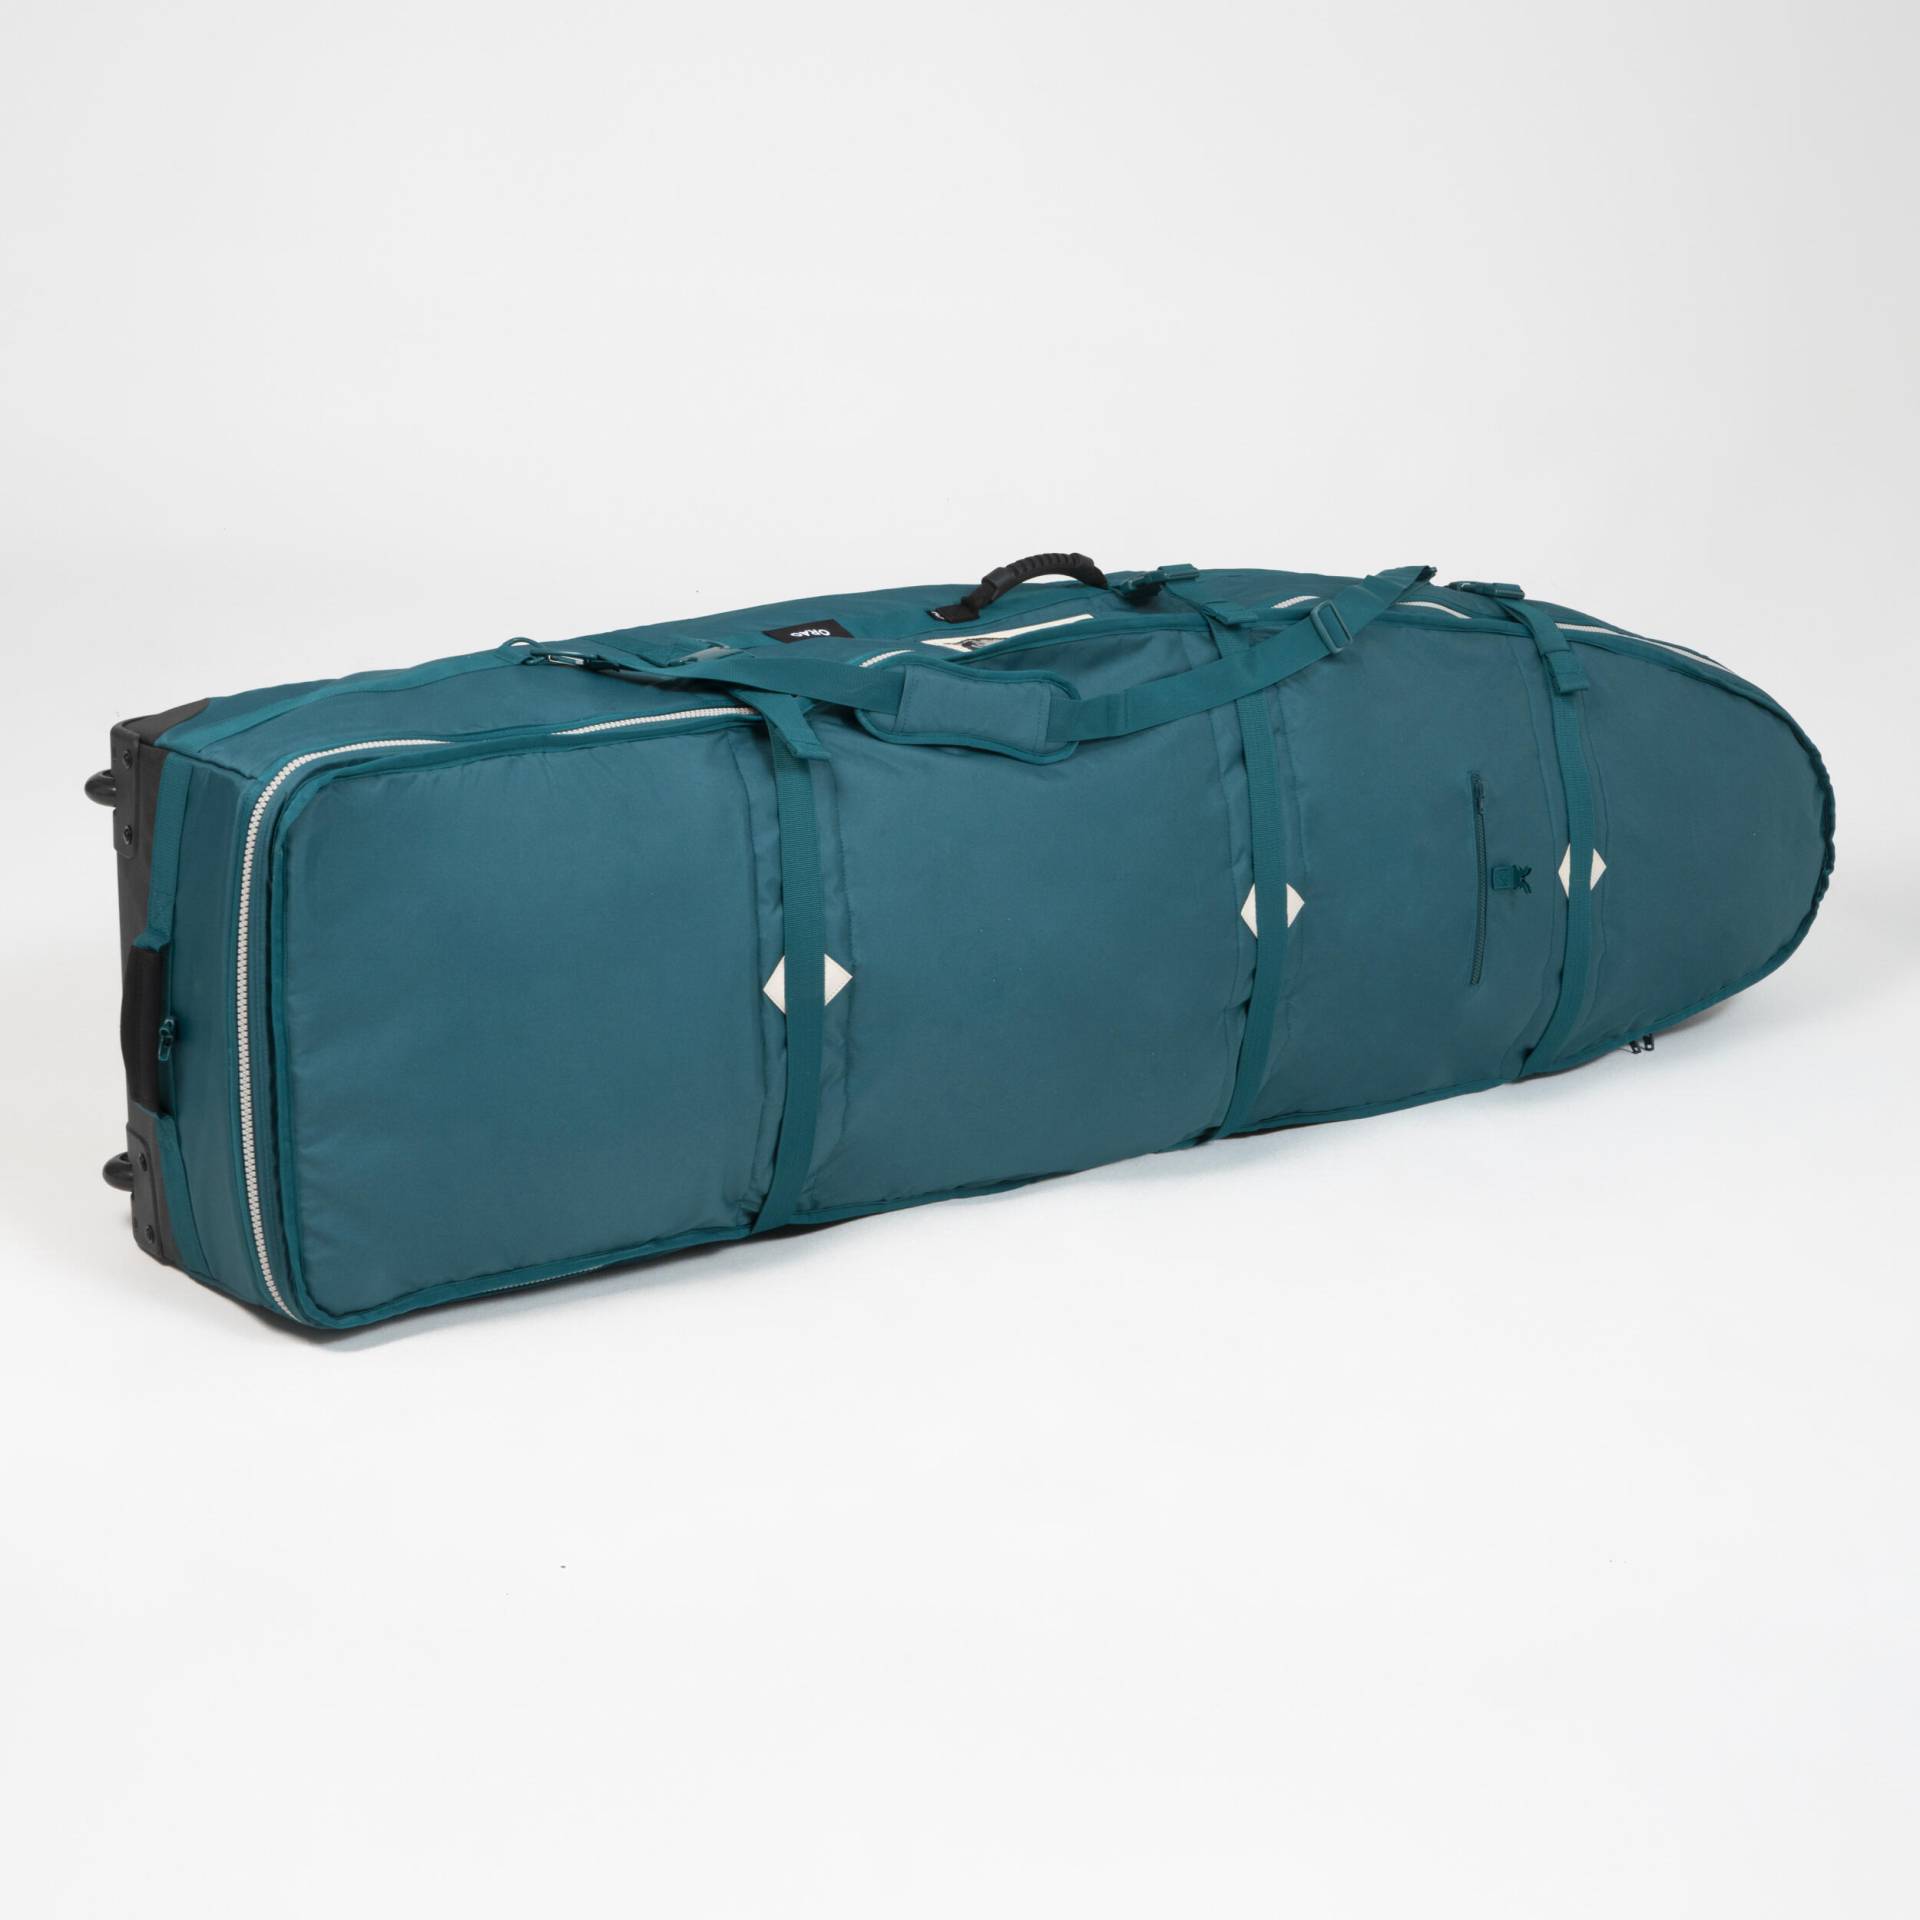 Boardbag mit Rollen für Kitesurf oder Wing 6' × 23'' von ORAO